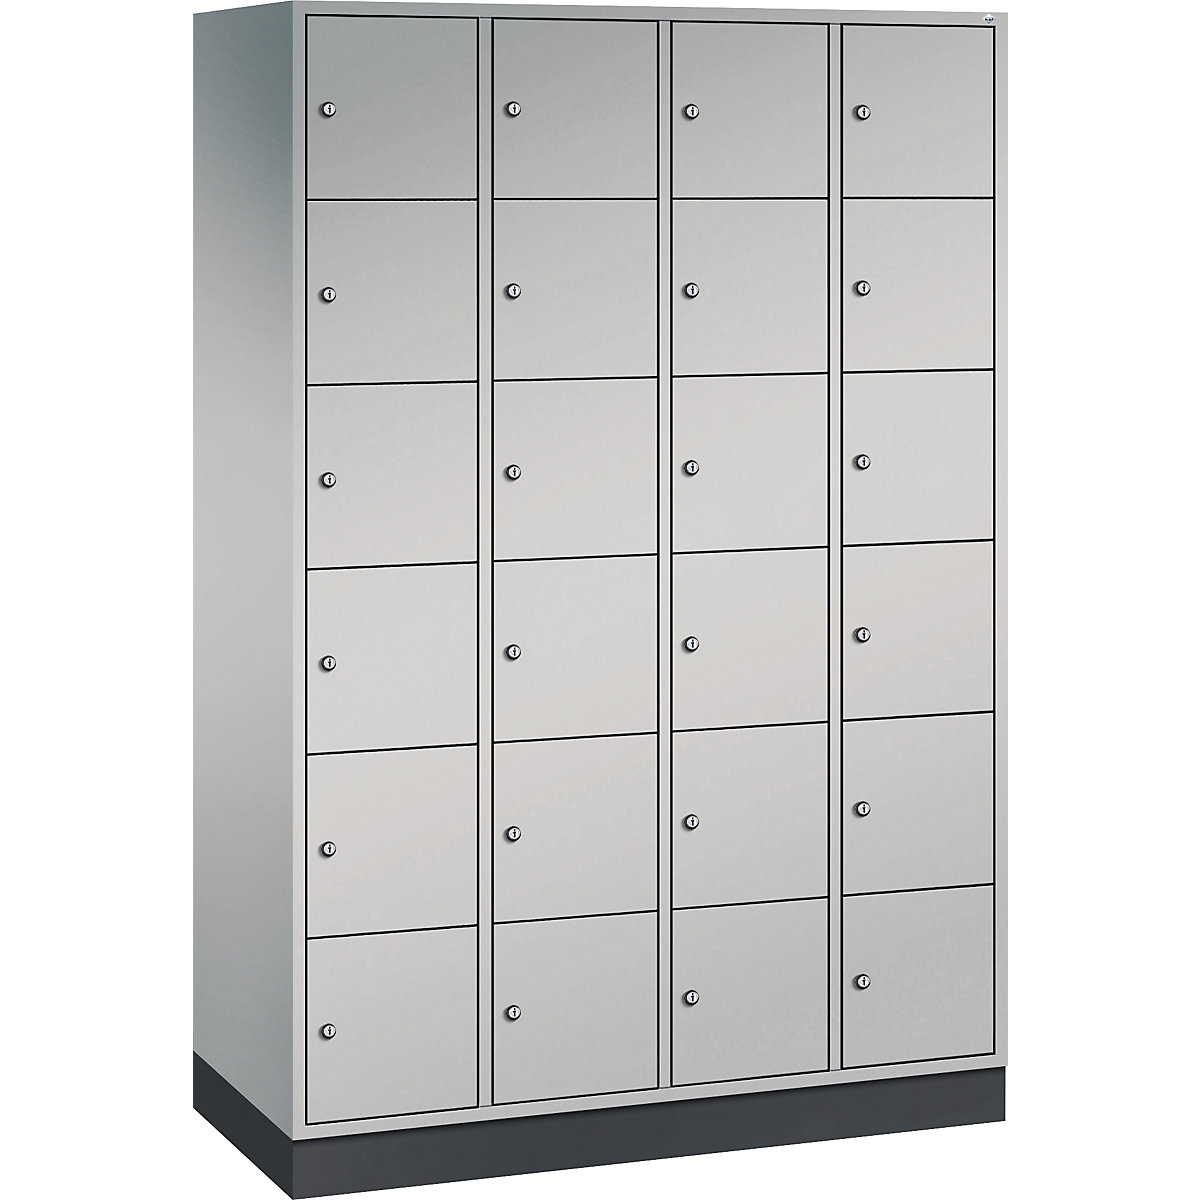 INTRO steel compartment locker, compartment height 285 mm – C+P, WxD 1220 x 500 mm, 24 compartments, white aluminium body, white aluminium doors-11